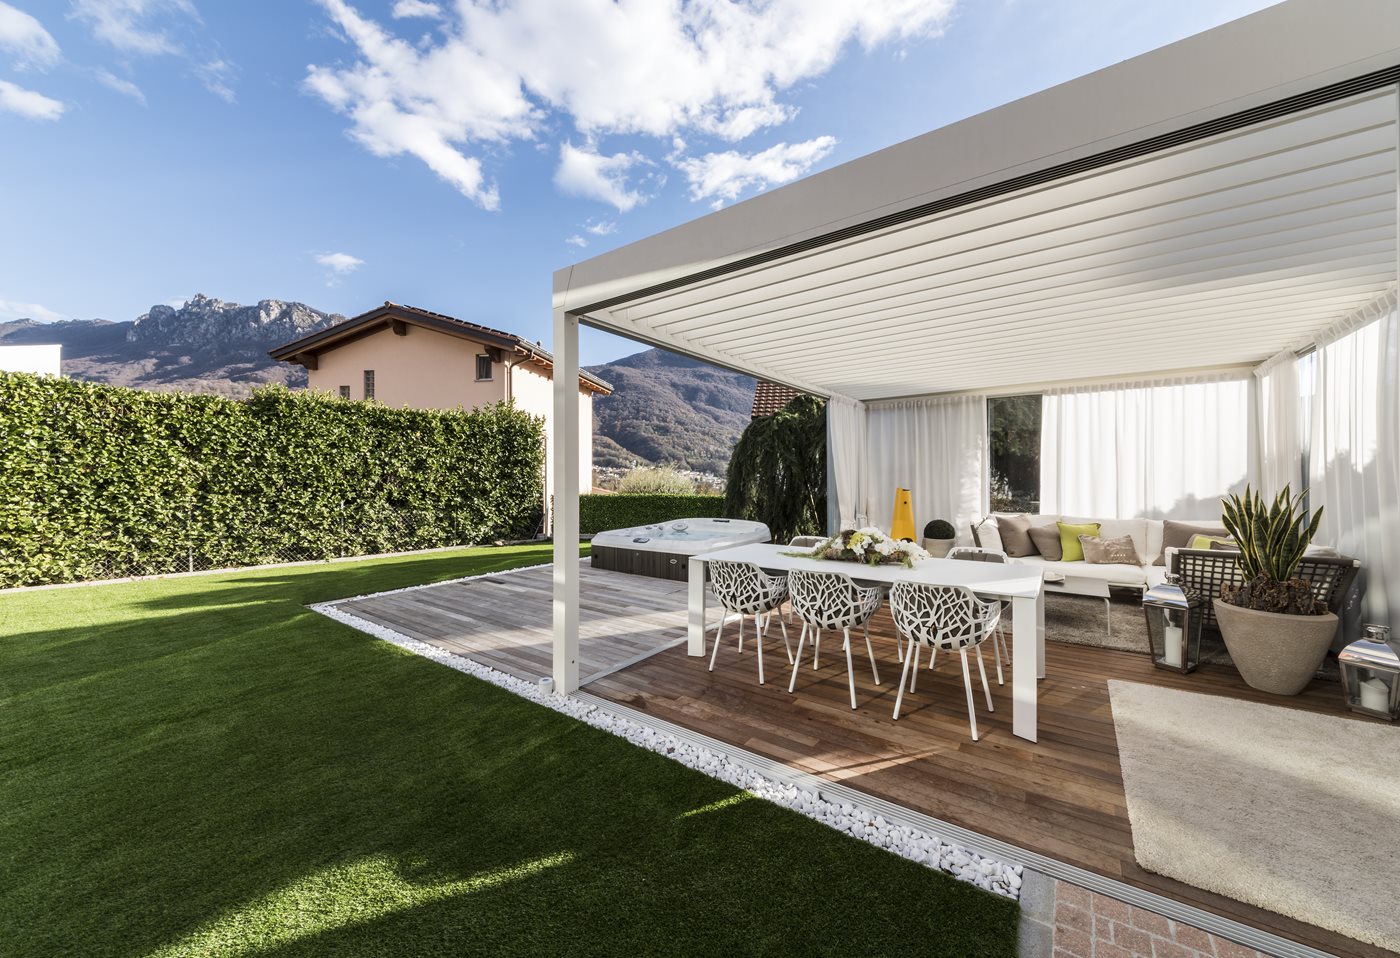 De pergola met lamellendak van Corradi: dé outdoor oplossing voor je buitenruimte die comfortabel en functioneel is. 